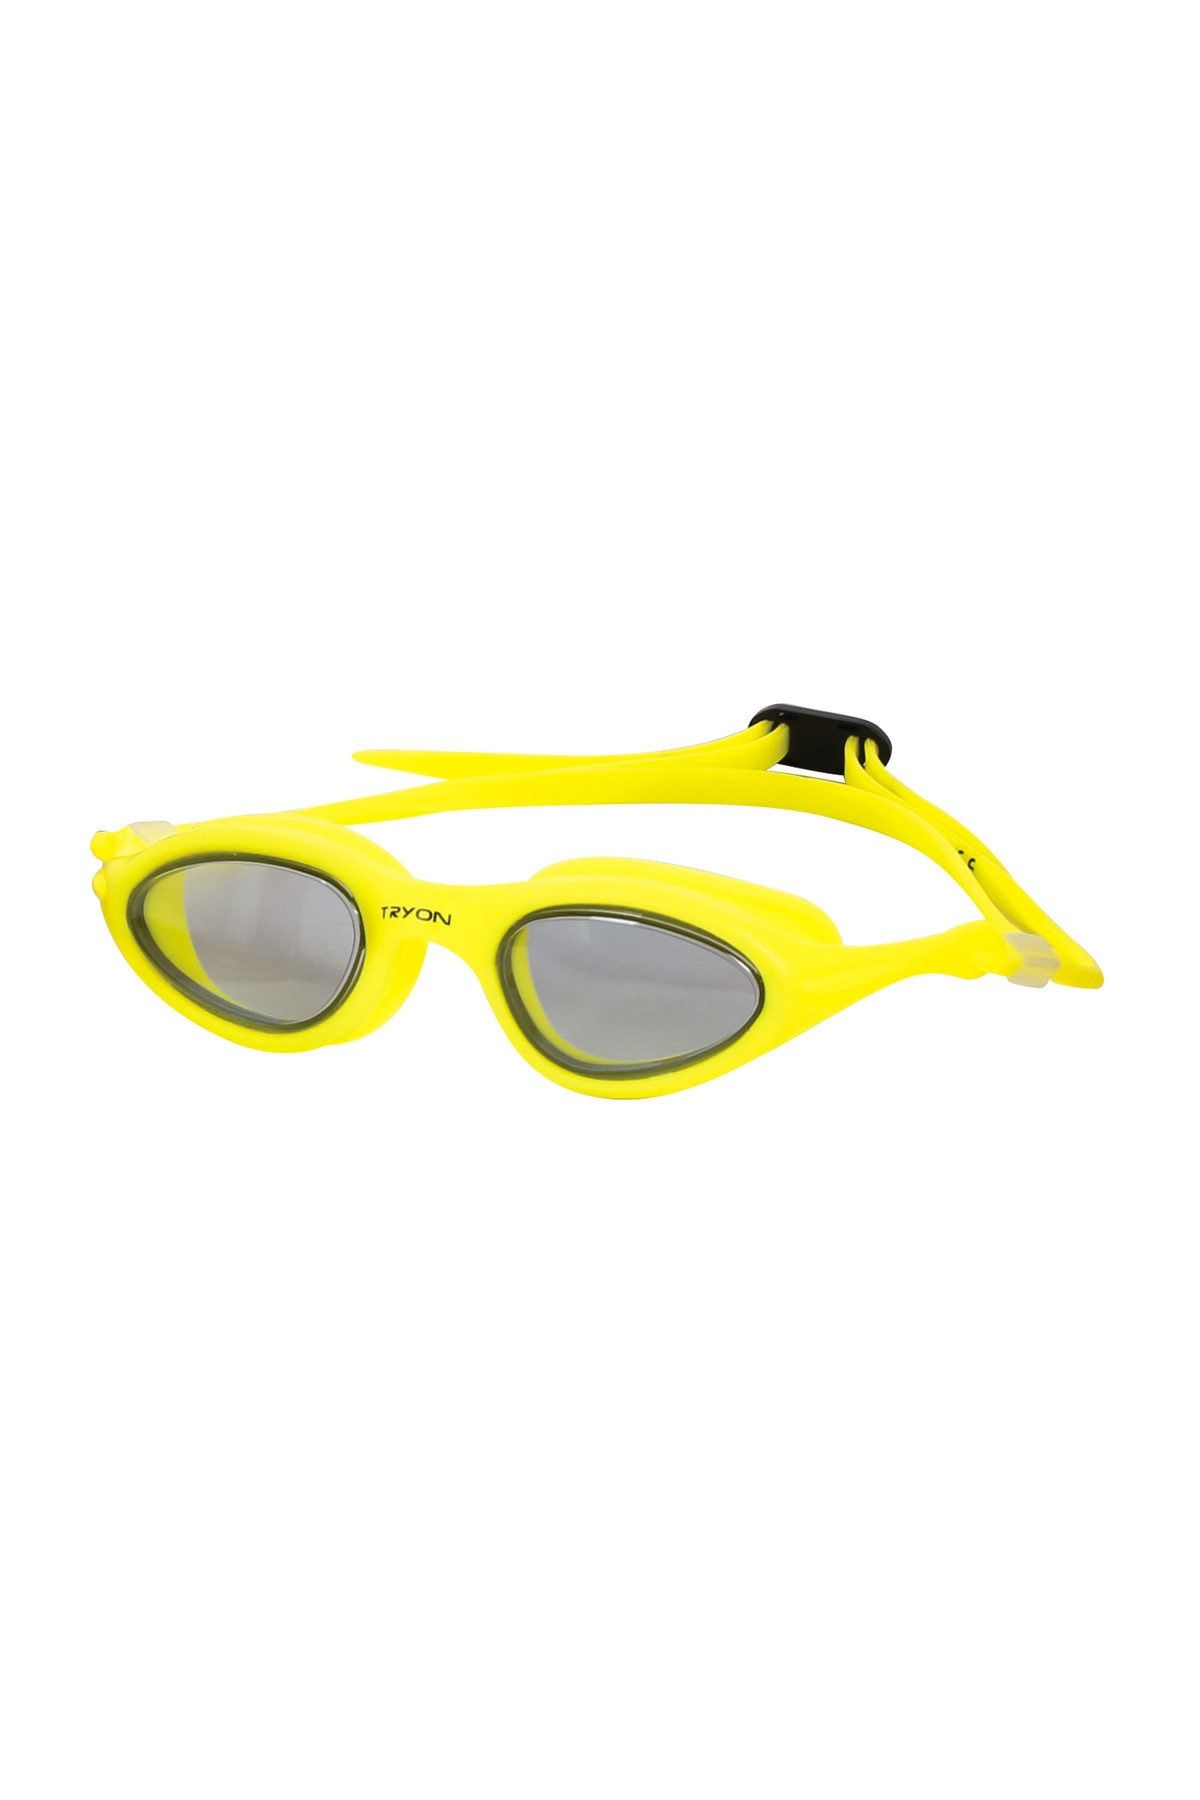 TRYON Yüzücü Gözlüğü Yg-3000